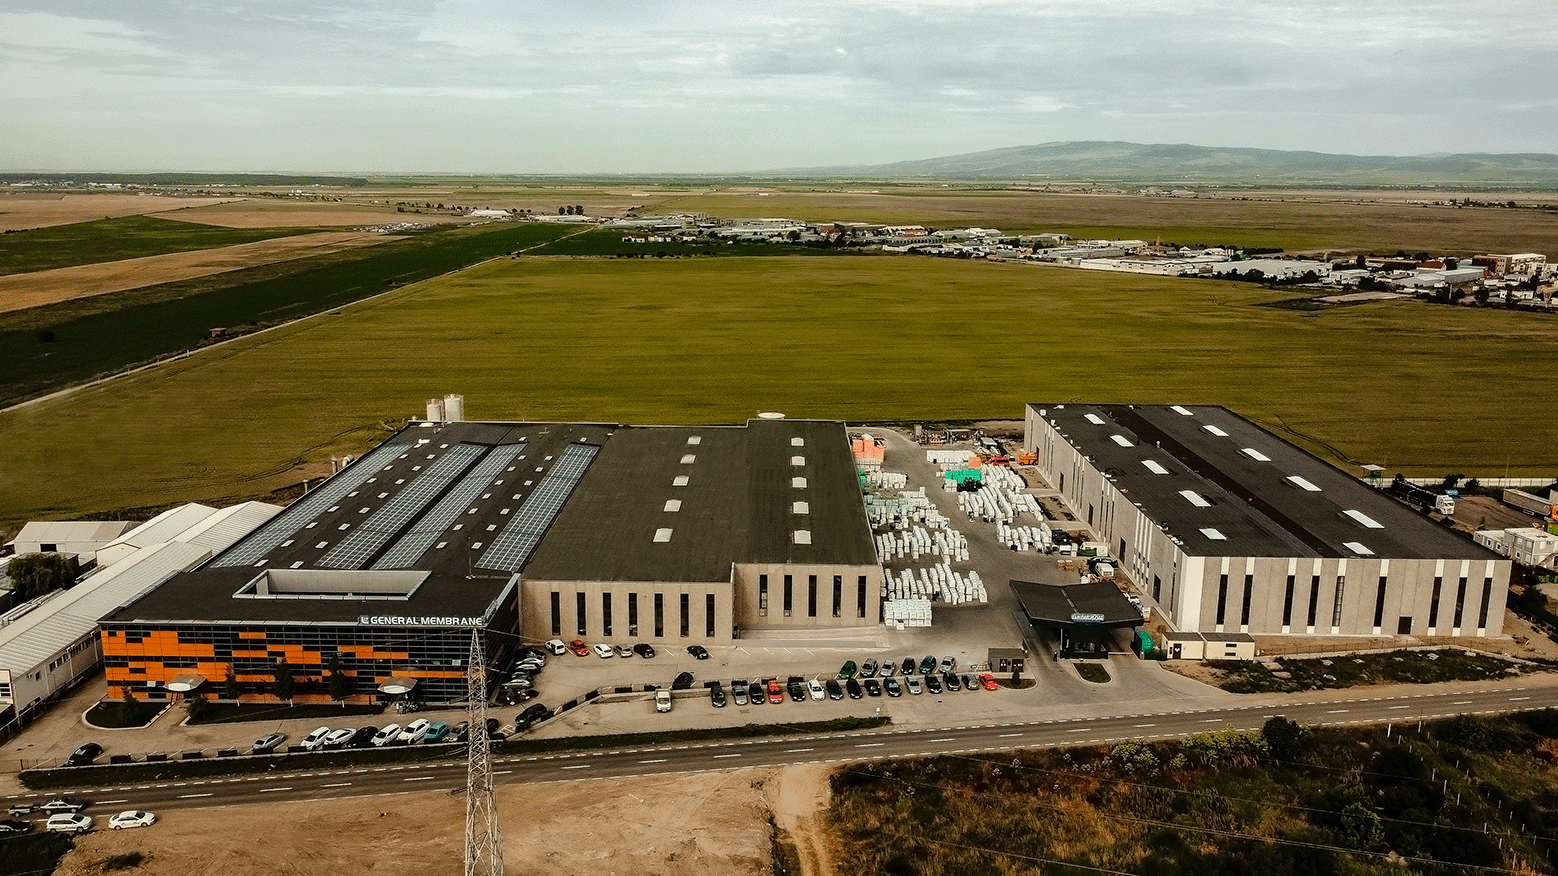 ING Bank Român creditează compania General Membrane, pentru construcția unei noi fabrici de polistiren în Buzău și achiziția de panouri fotovoltaice